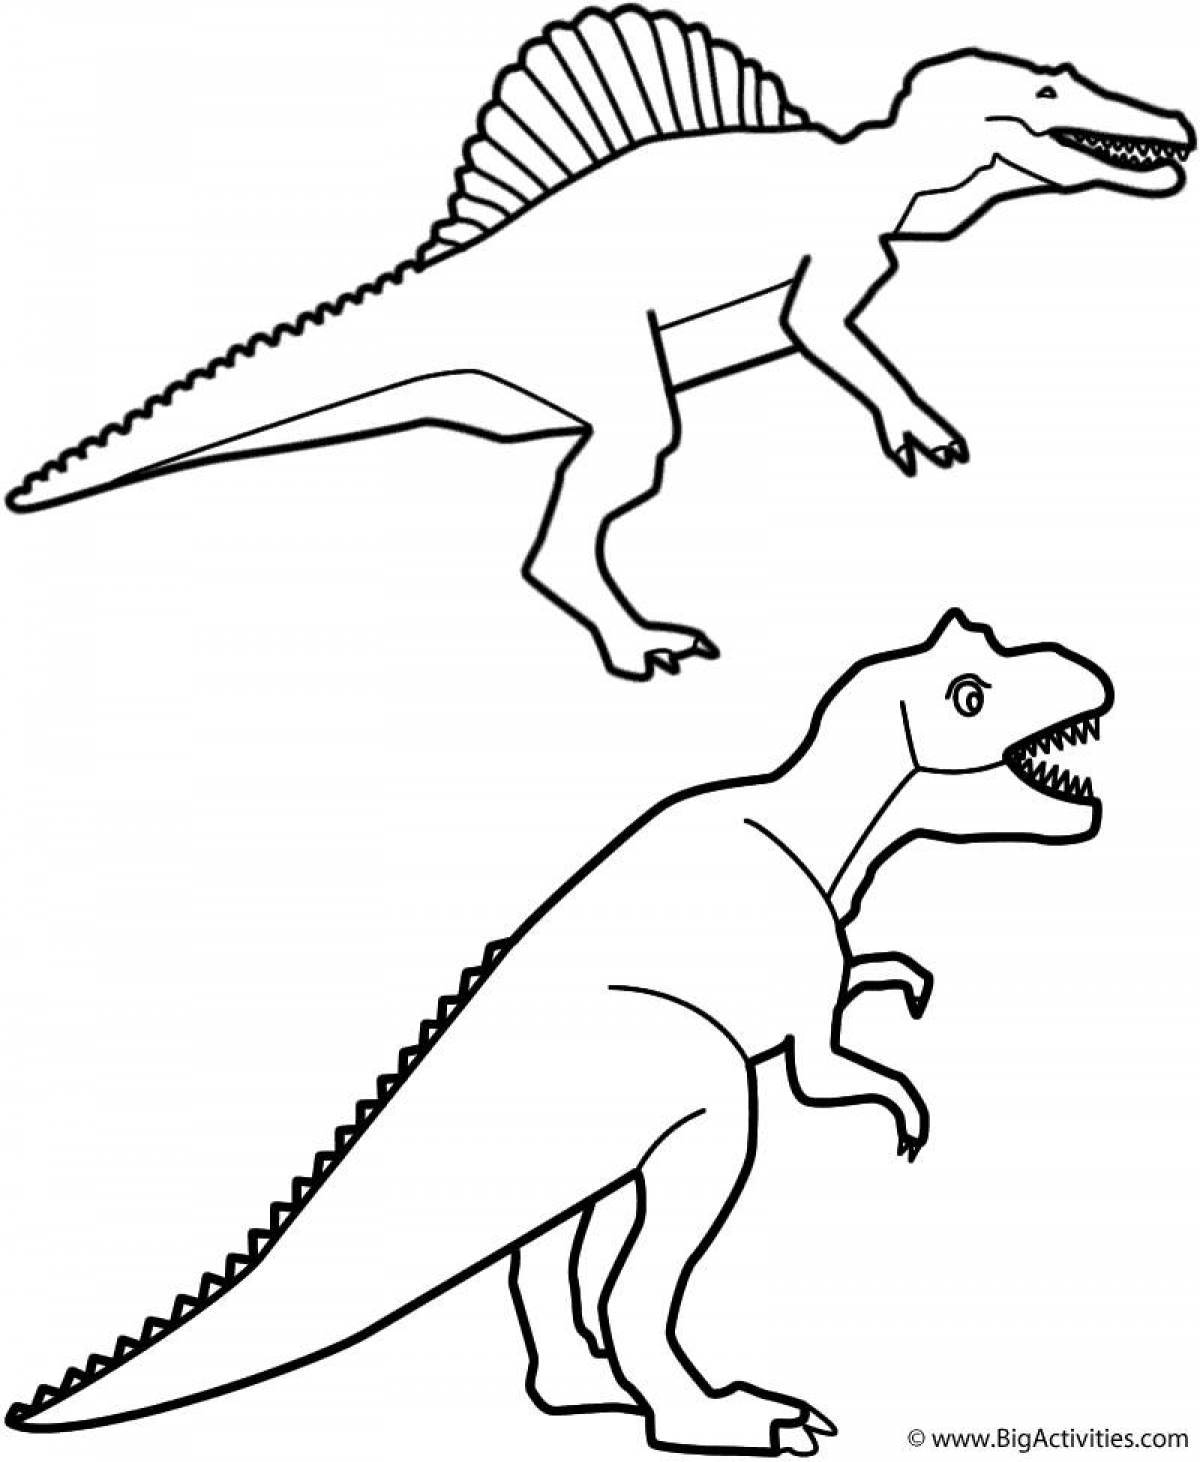 Раскраски динозавры Спинозавр